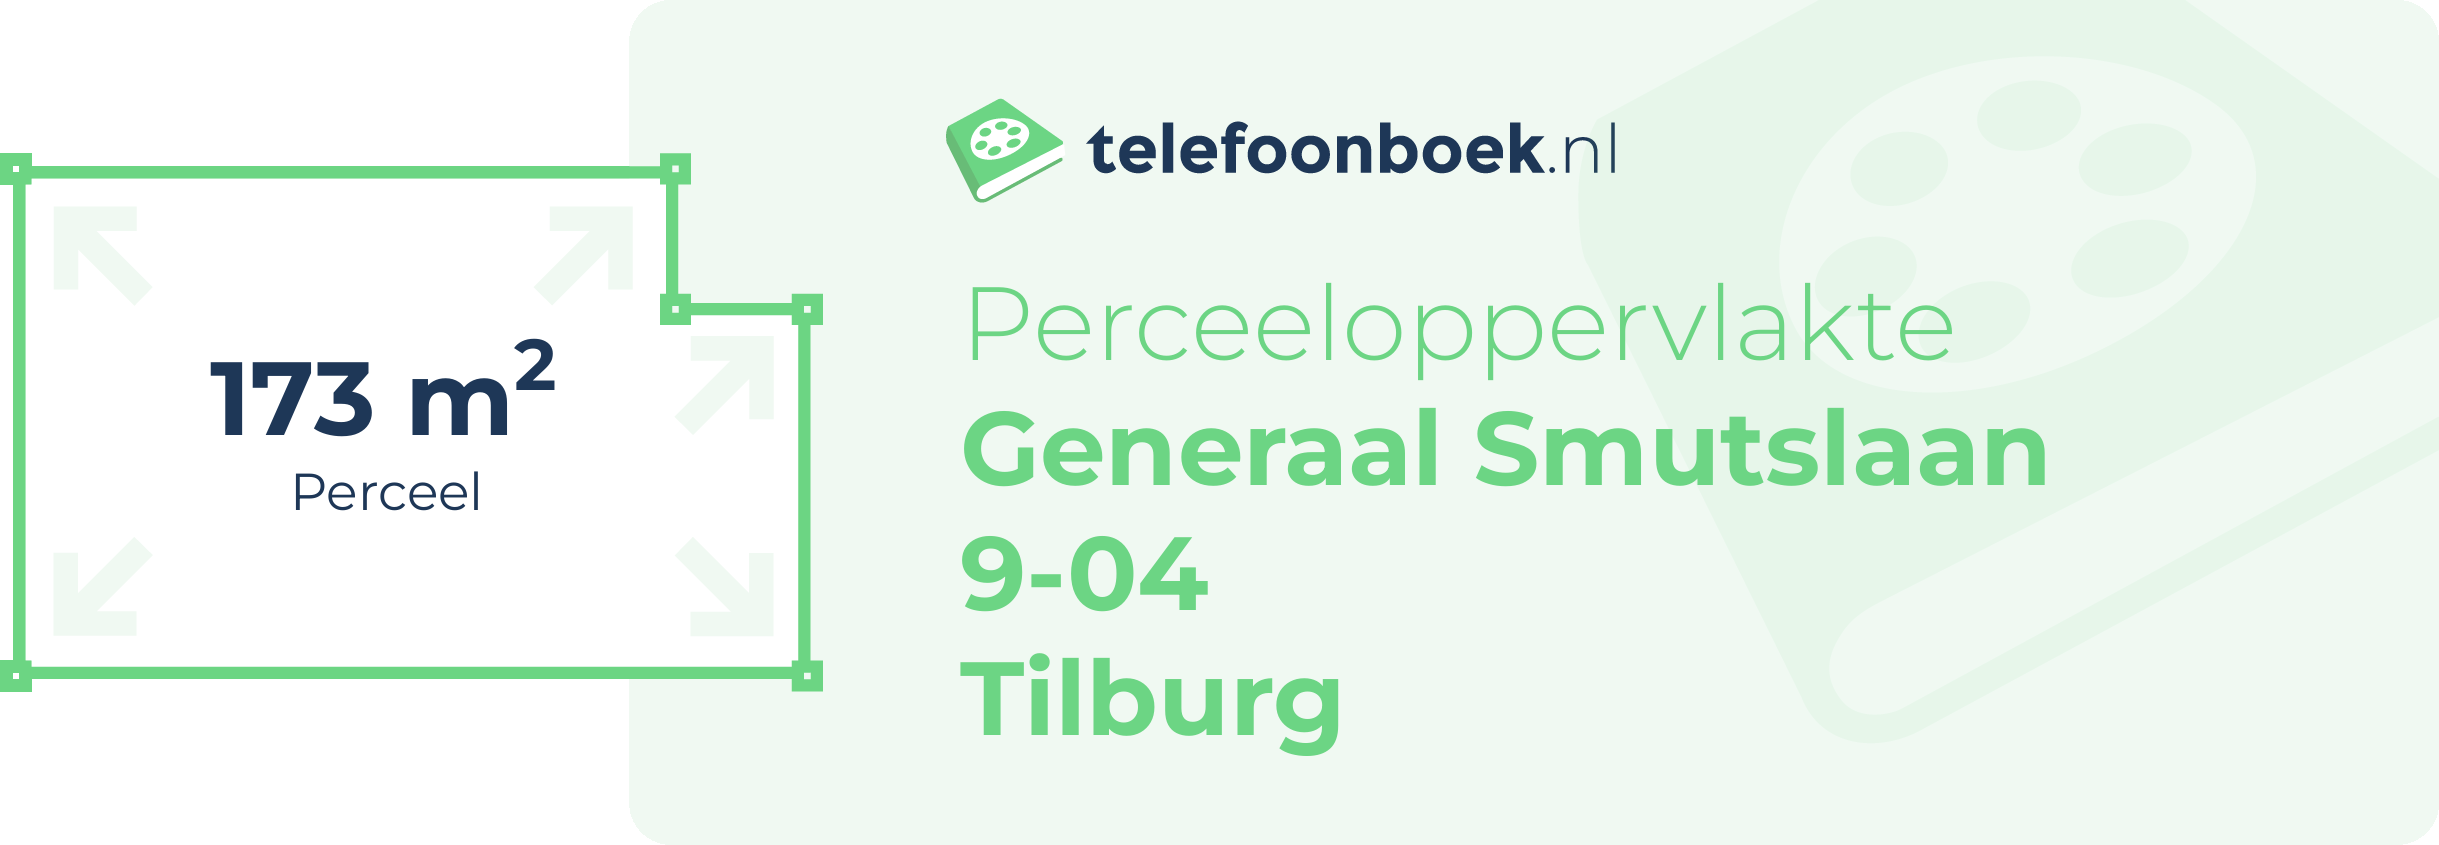 Perceeloppervlakte Generaal Smutslaan 9-04 Tilburg